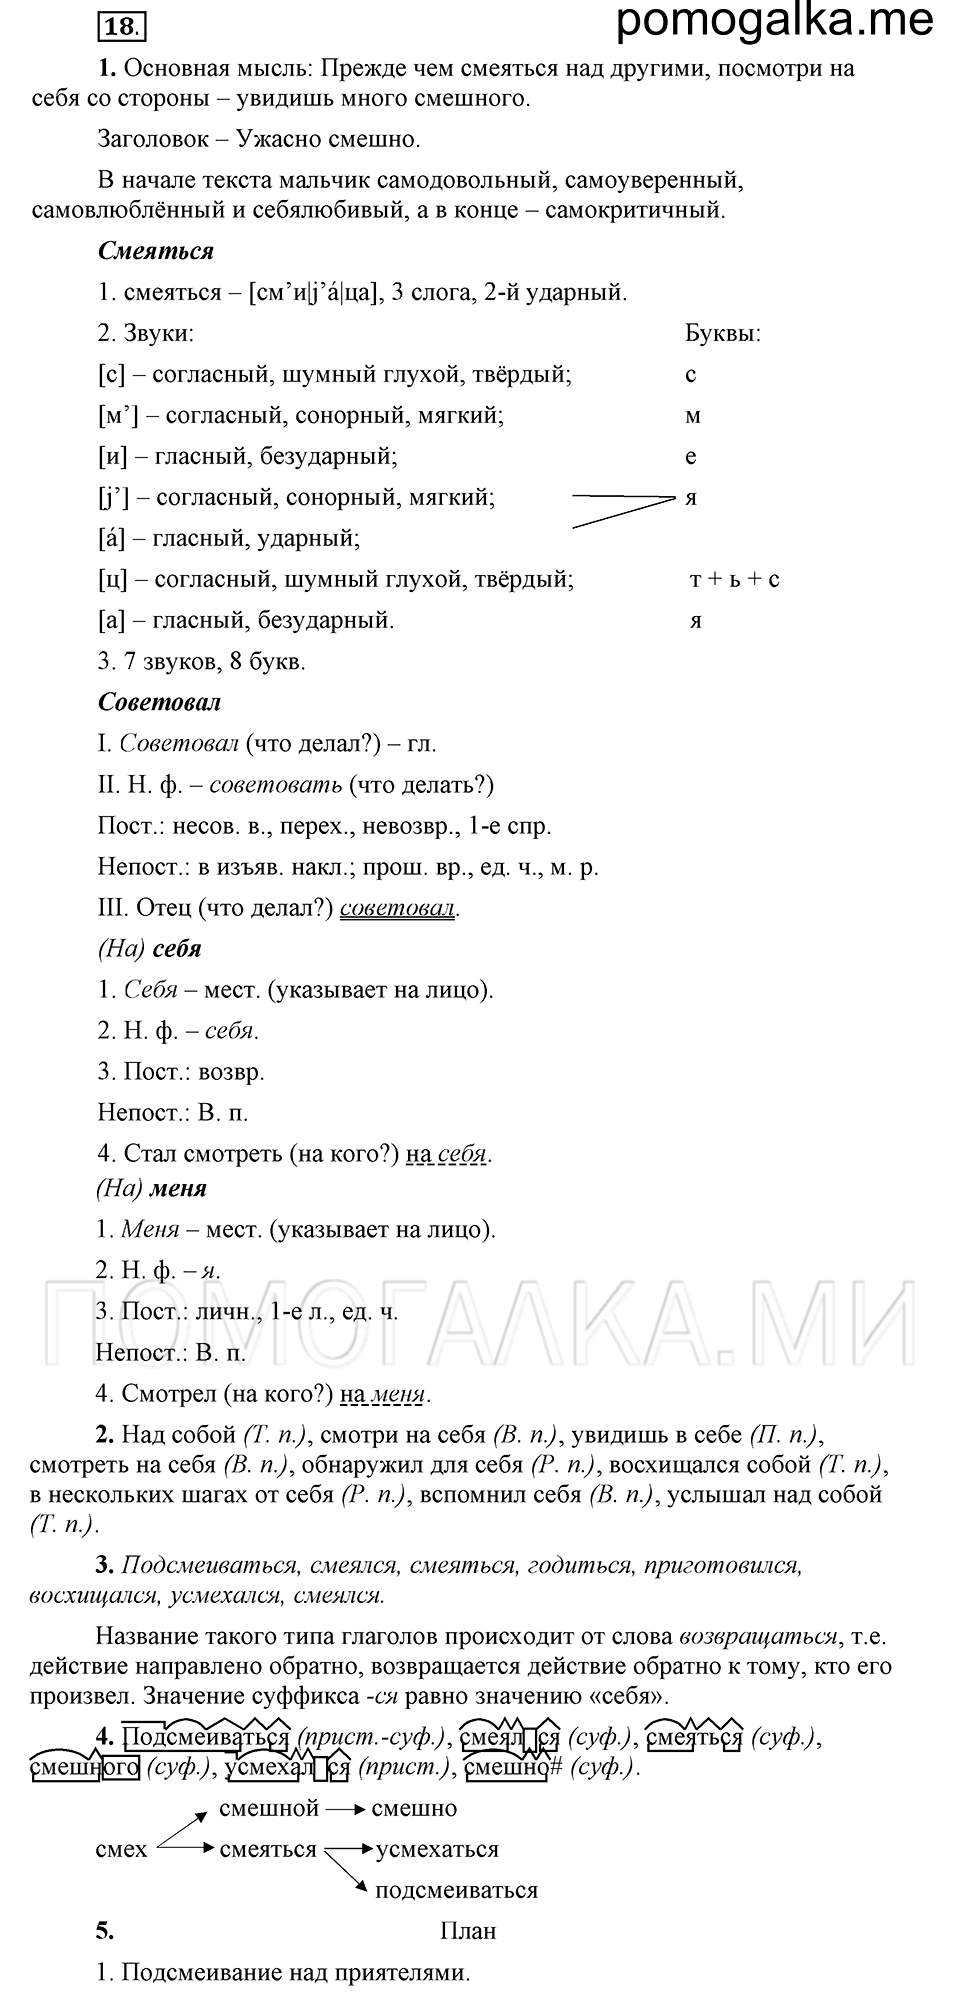 упражнение 18 русский язык 6 класс Быстрова, Кибирева 2 часть 2019 год